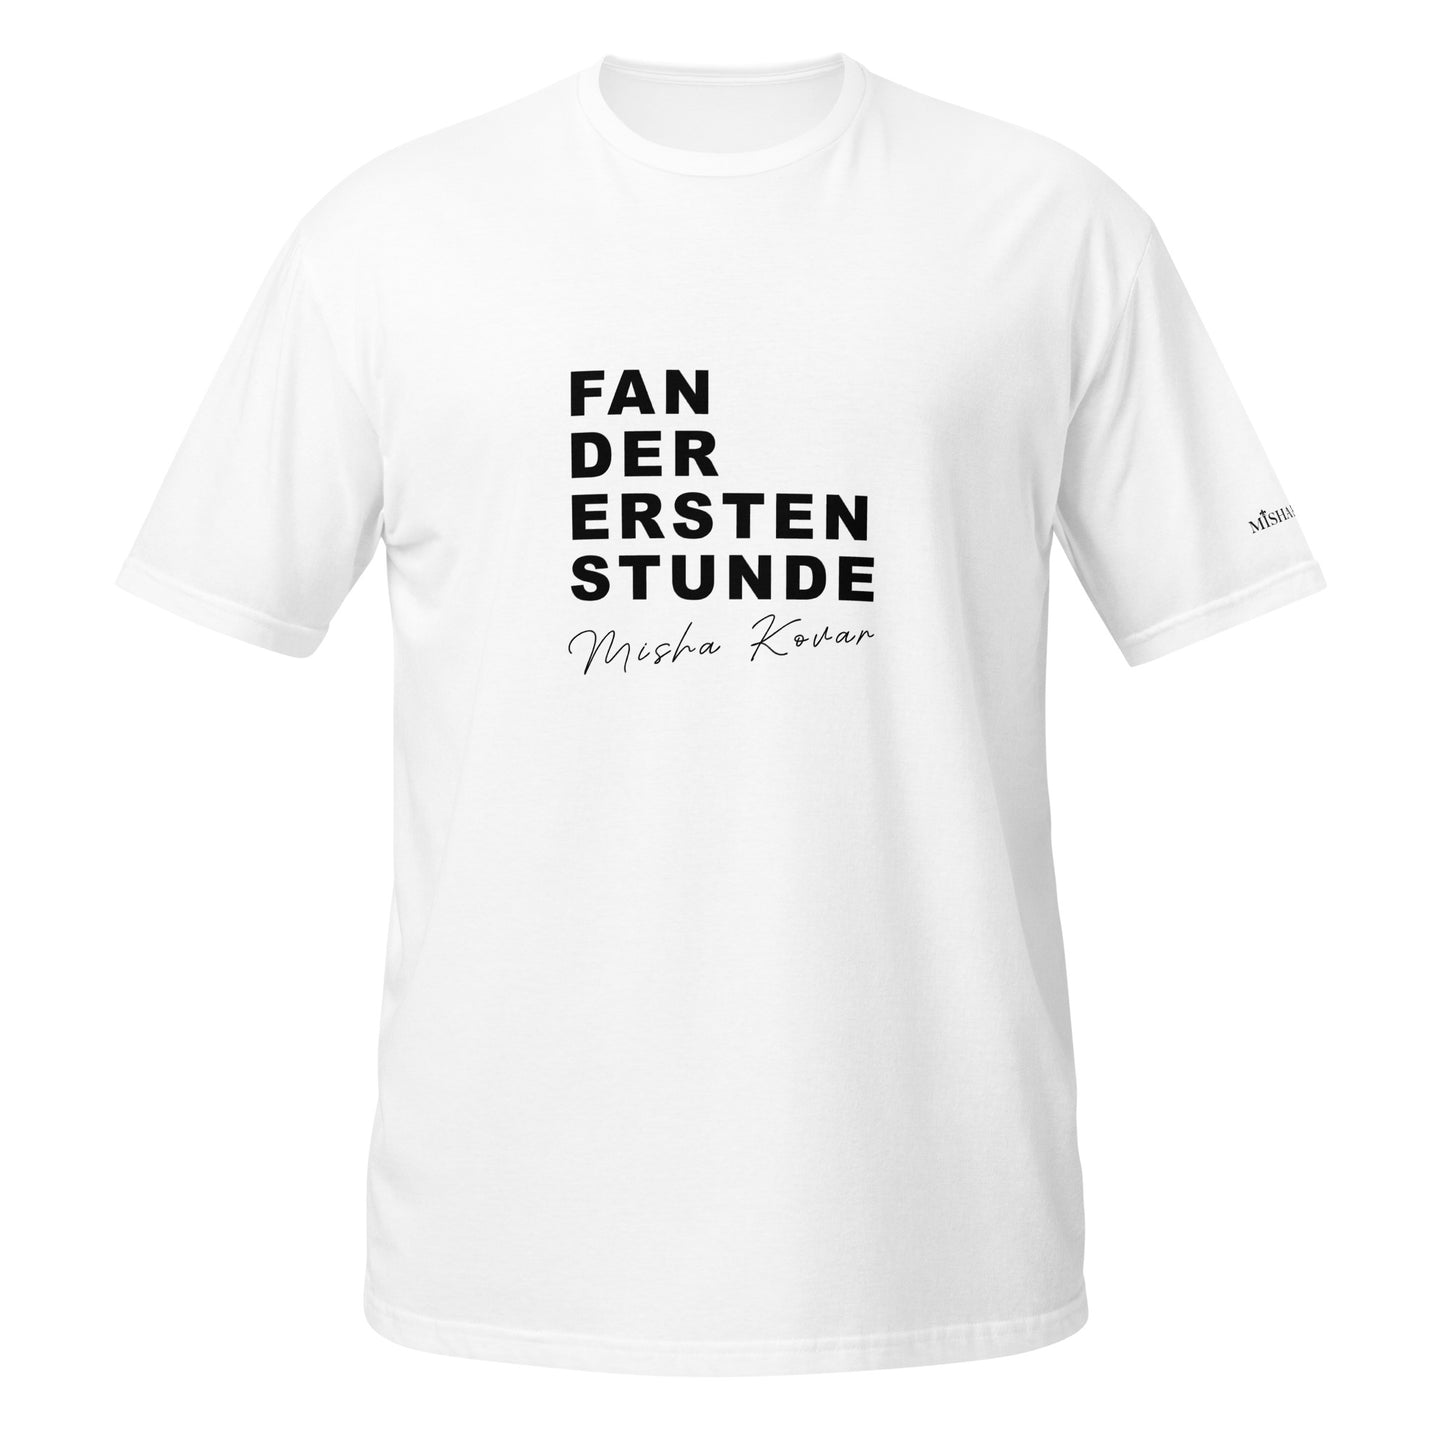 Misha Kovar "Fan der ersten Stunde"  Unisex-T-Shirt (weiß)